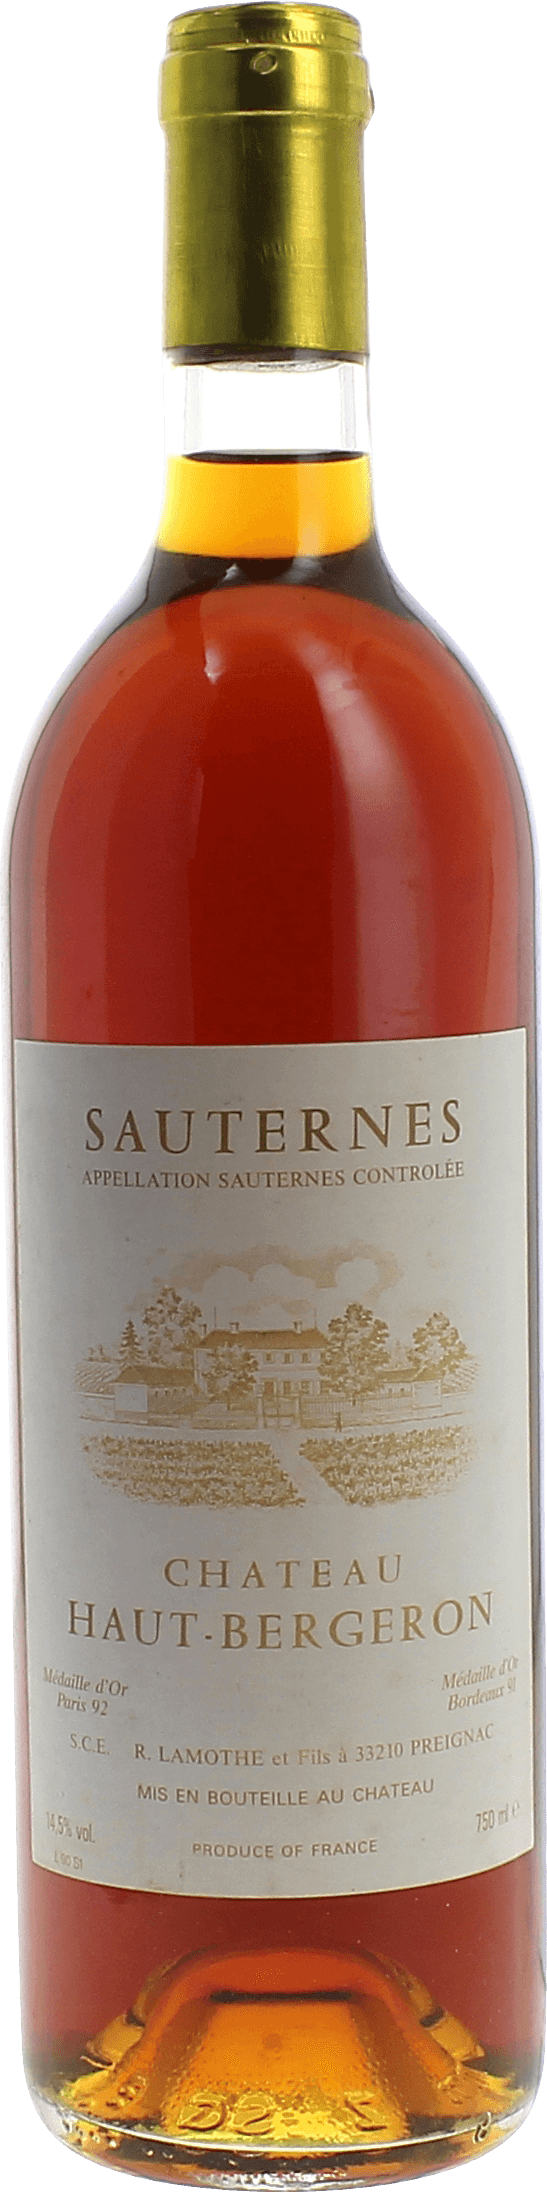 Haut bergeron 1990  Sauternes, Bordeaux blanc